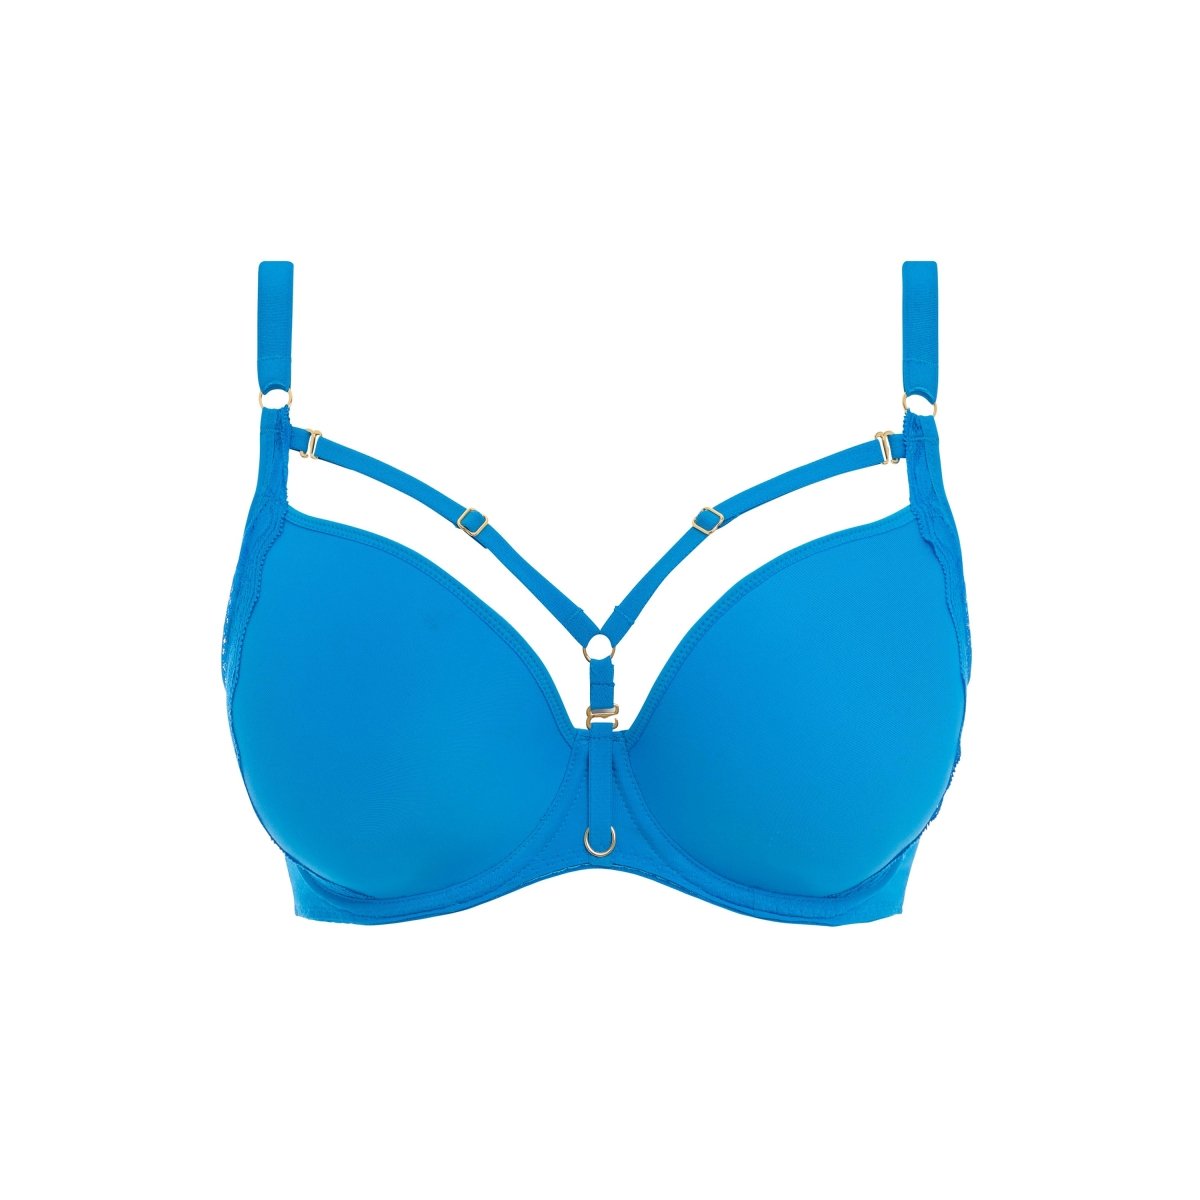 https://bravobraboutique.com/cdn/shop/products/temptress-uw-moulded-plunge-t-shirt-bra-med-blue-aa400131-182149.jpg?v=1696970446&width=1200